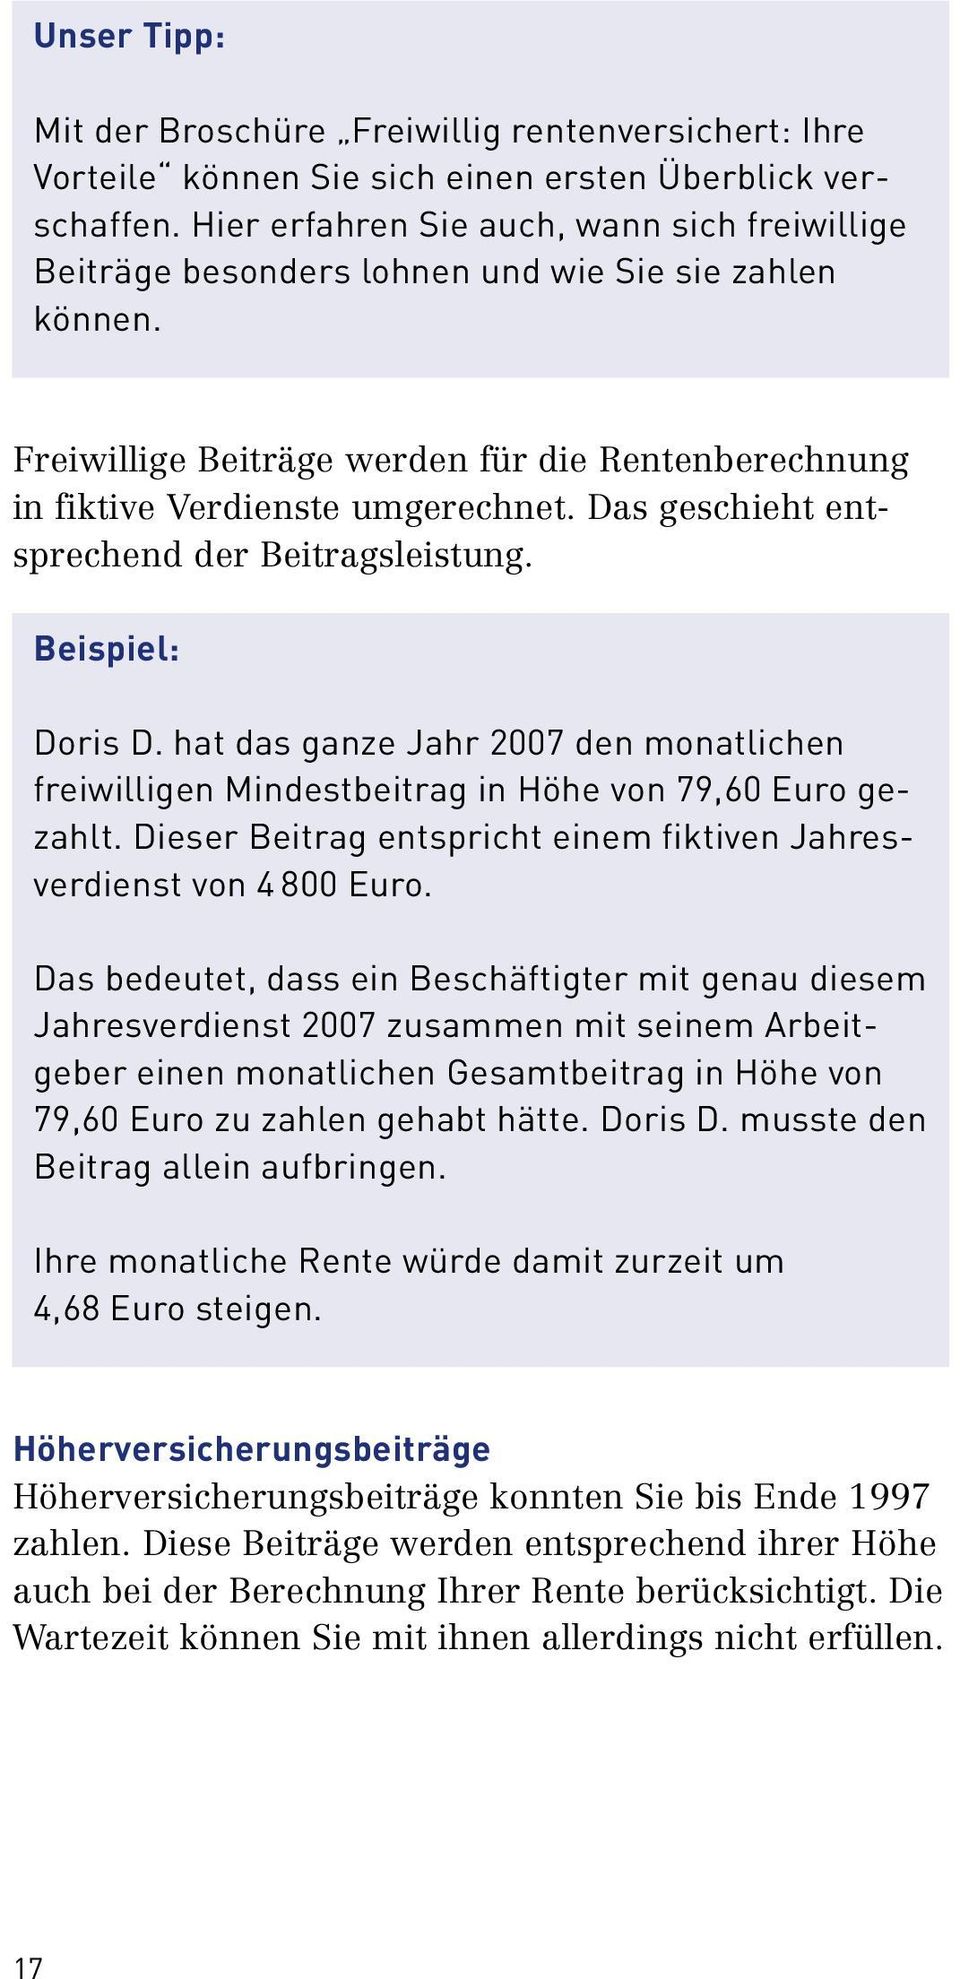 Das geschieht entsprechend der Beitragsleistung. Beispiel: Doris D. hat das ganze Jahr 2007 den monatlichen freiwilligen Mindestbeitrag in Höhe von 79,60 Euro gezahlt.